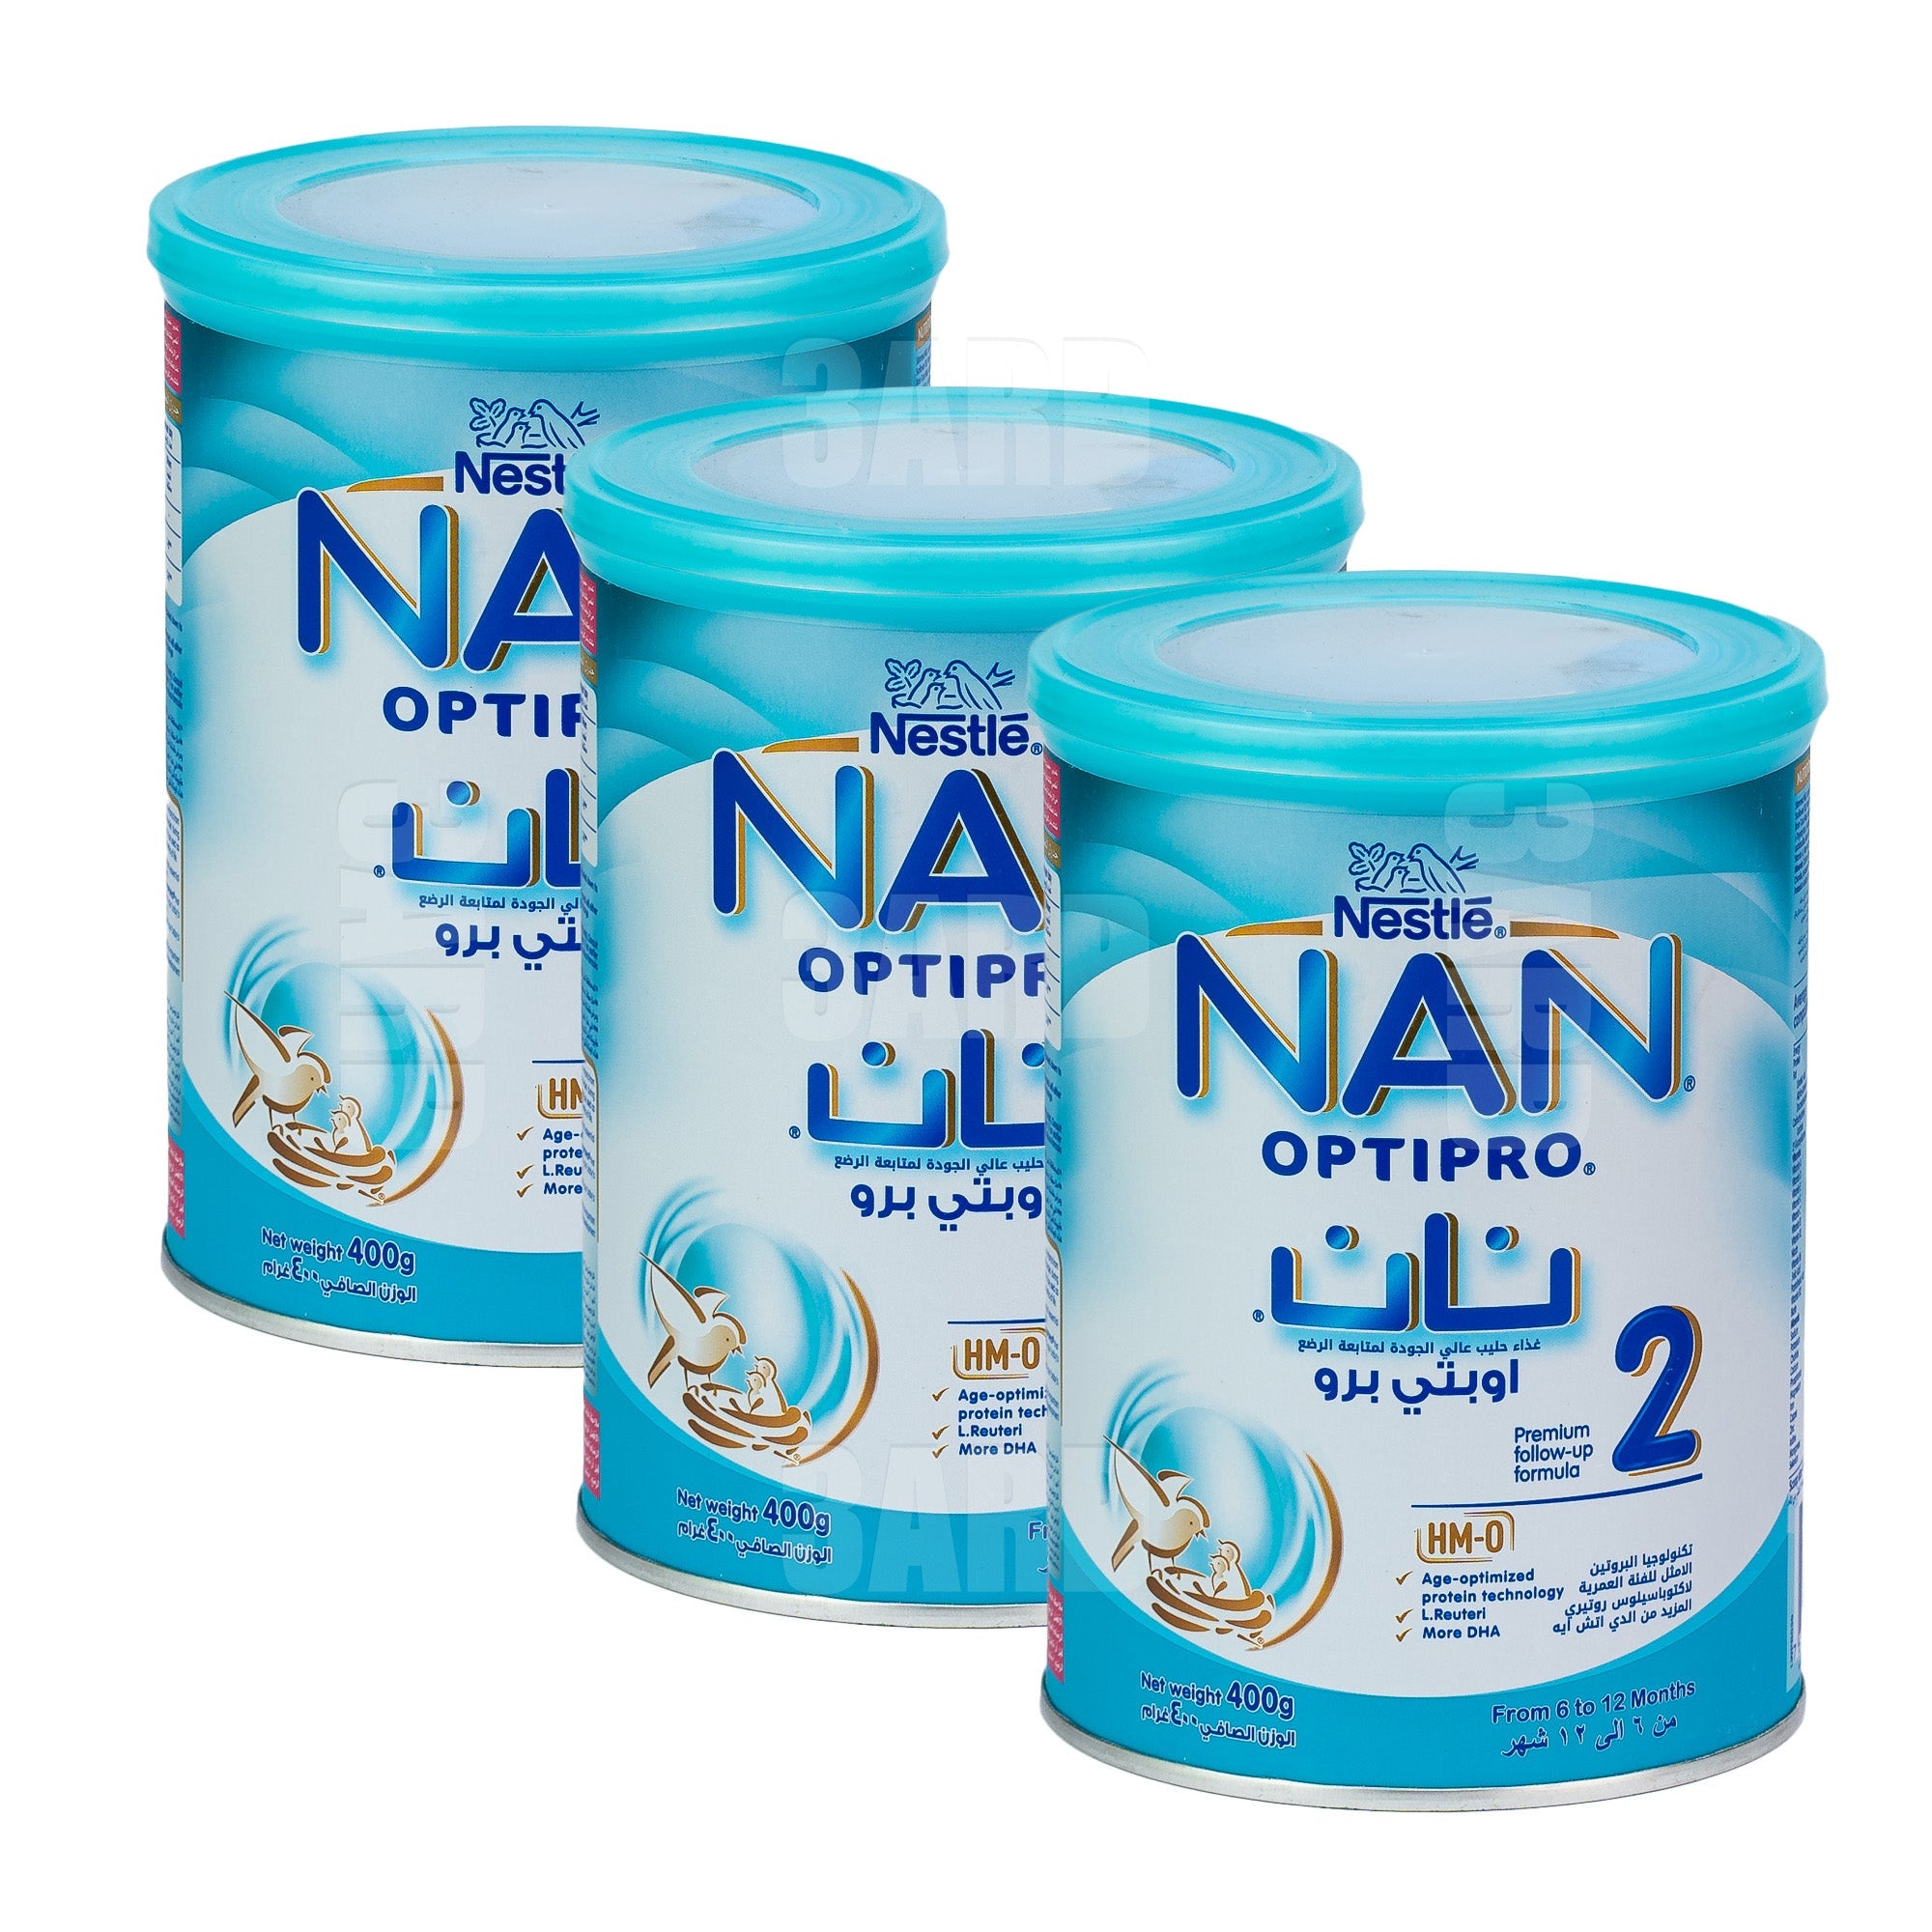 Optipro 1 starter formula 2'fl by Nestle nan : review - Formula & food